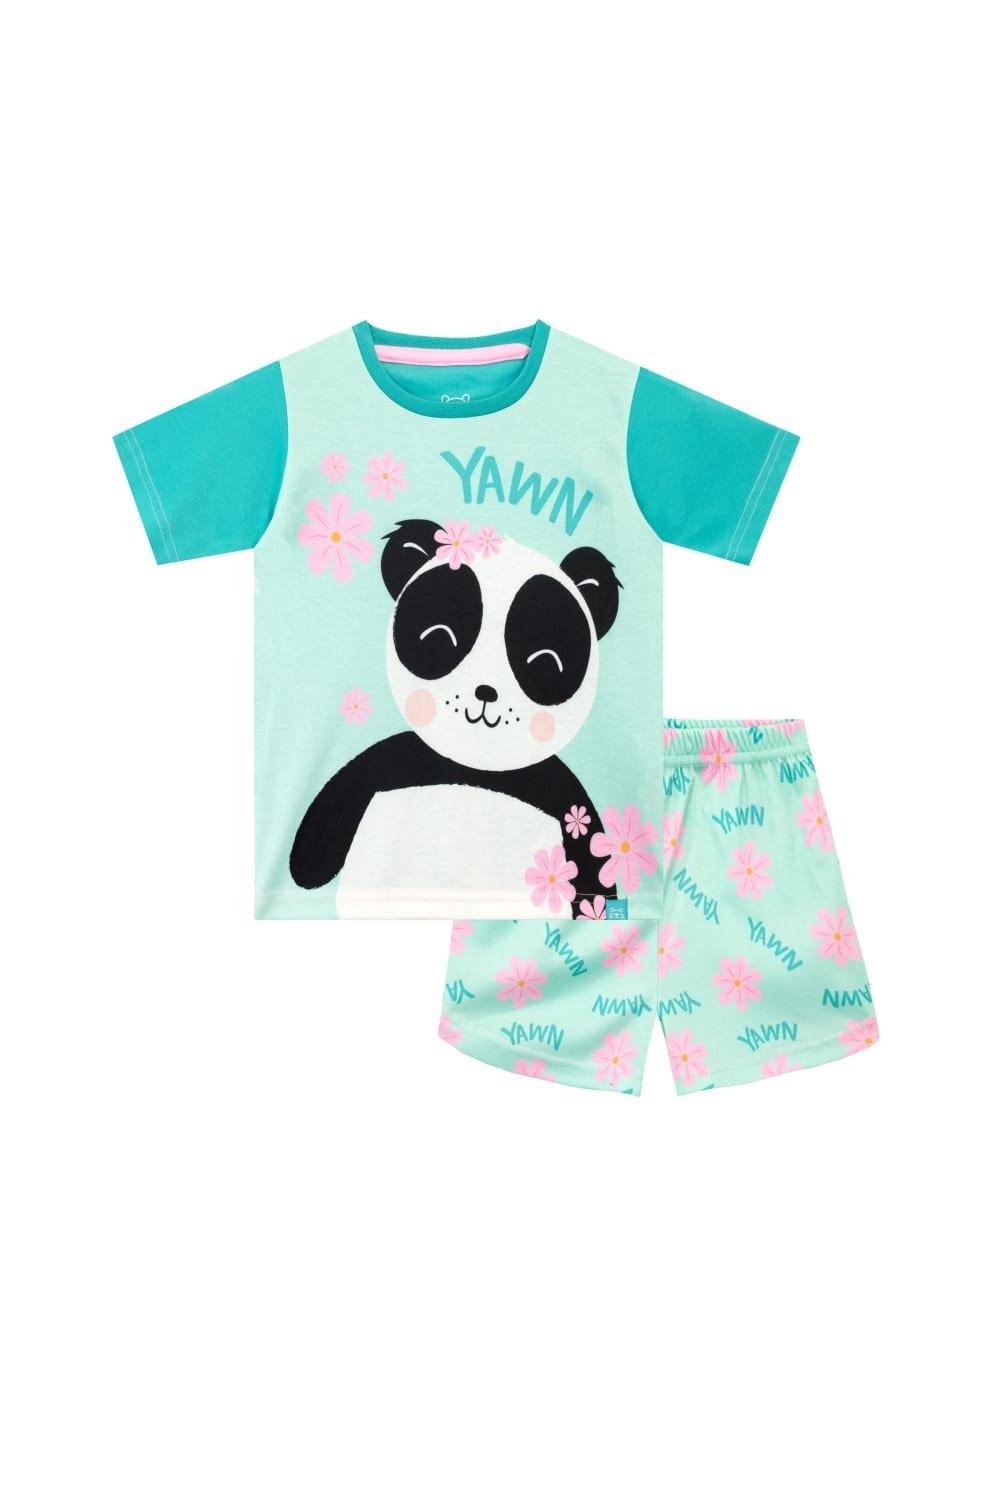 Panda Print Short Pyjamas